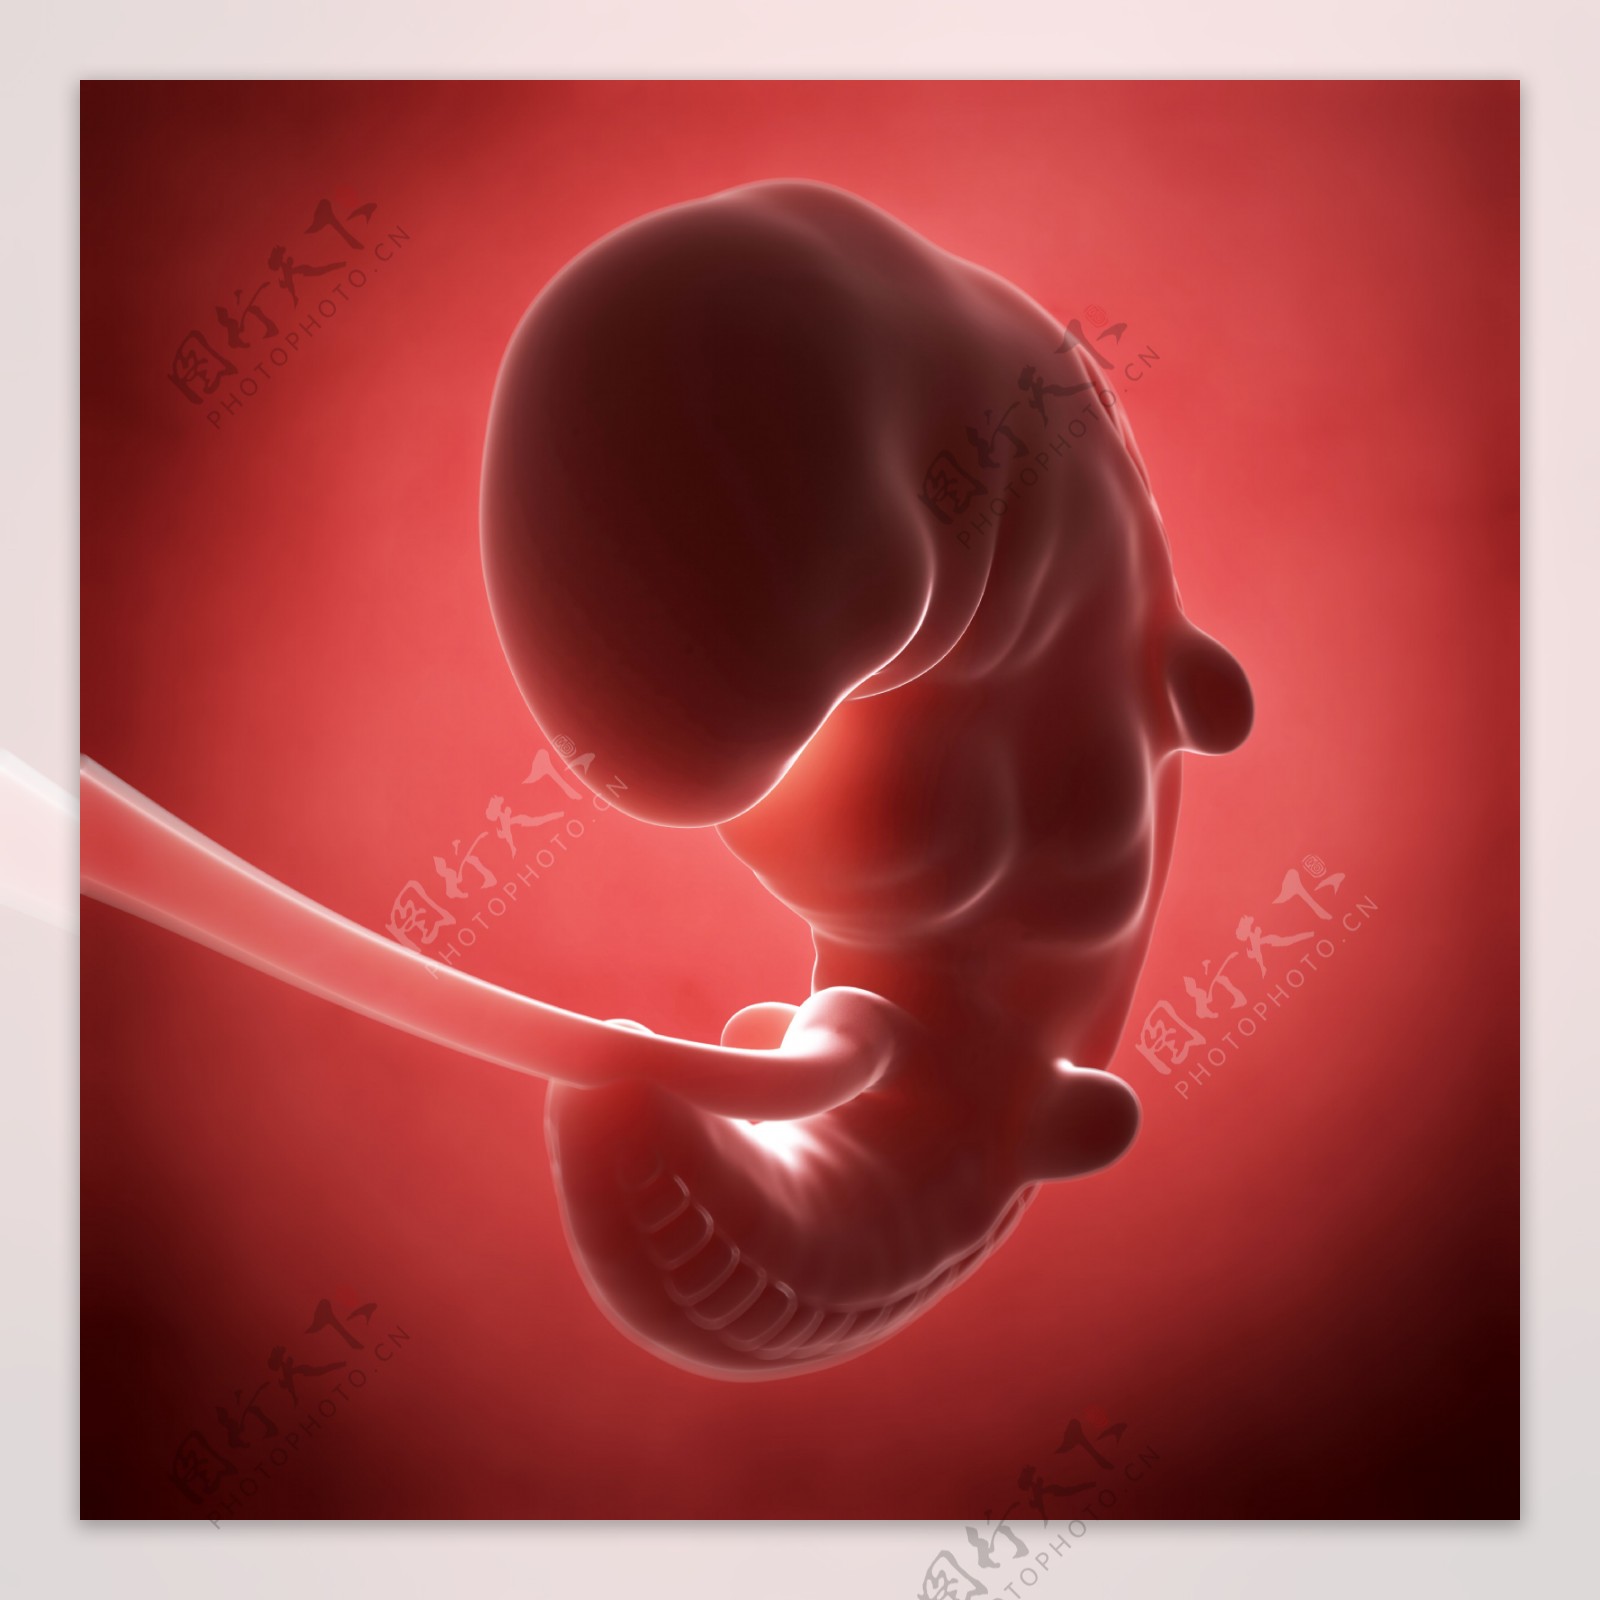 未发育的胚胎图片